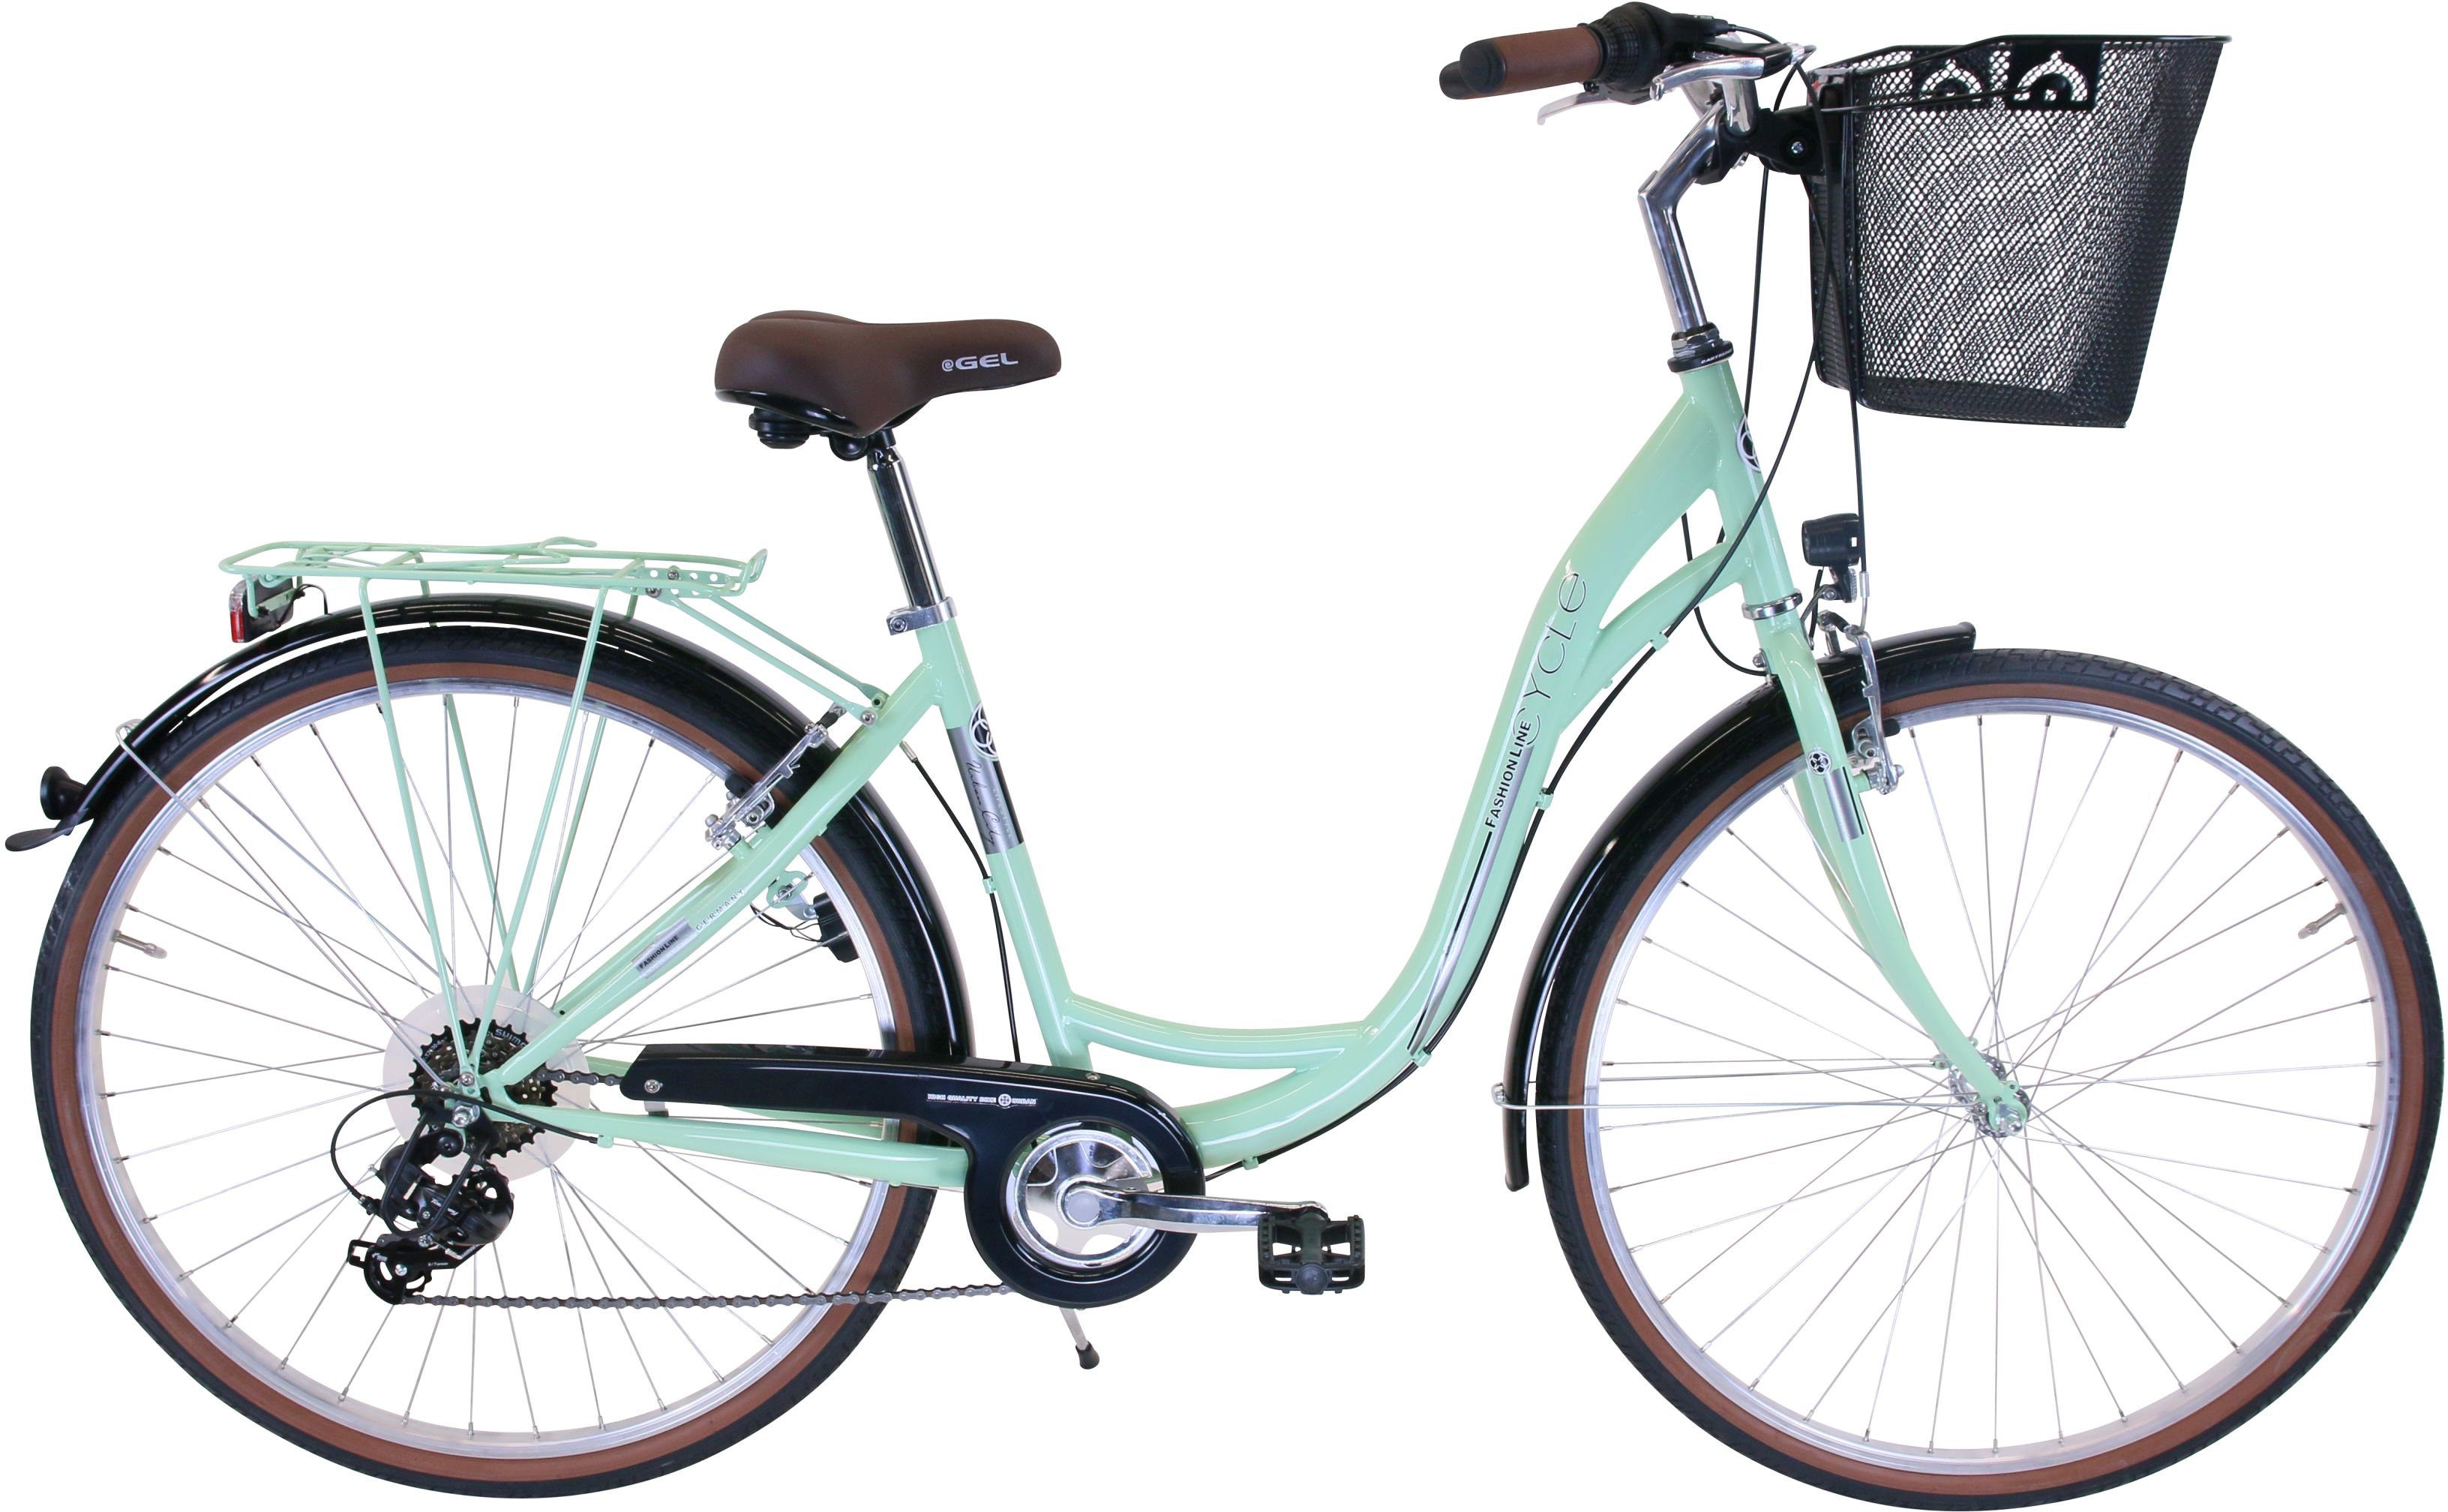 Fahrräder online kaufen » Passende Modelle für jeden | OTTO